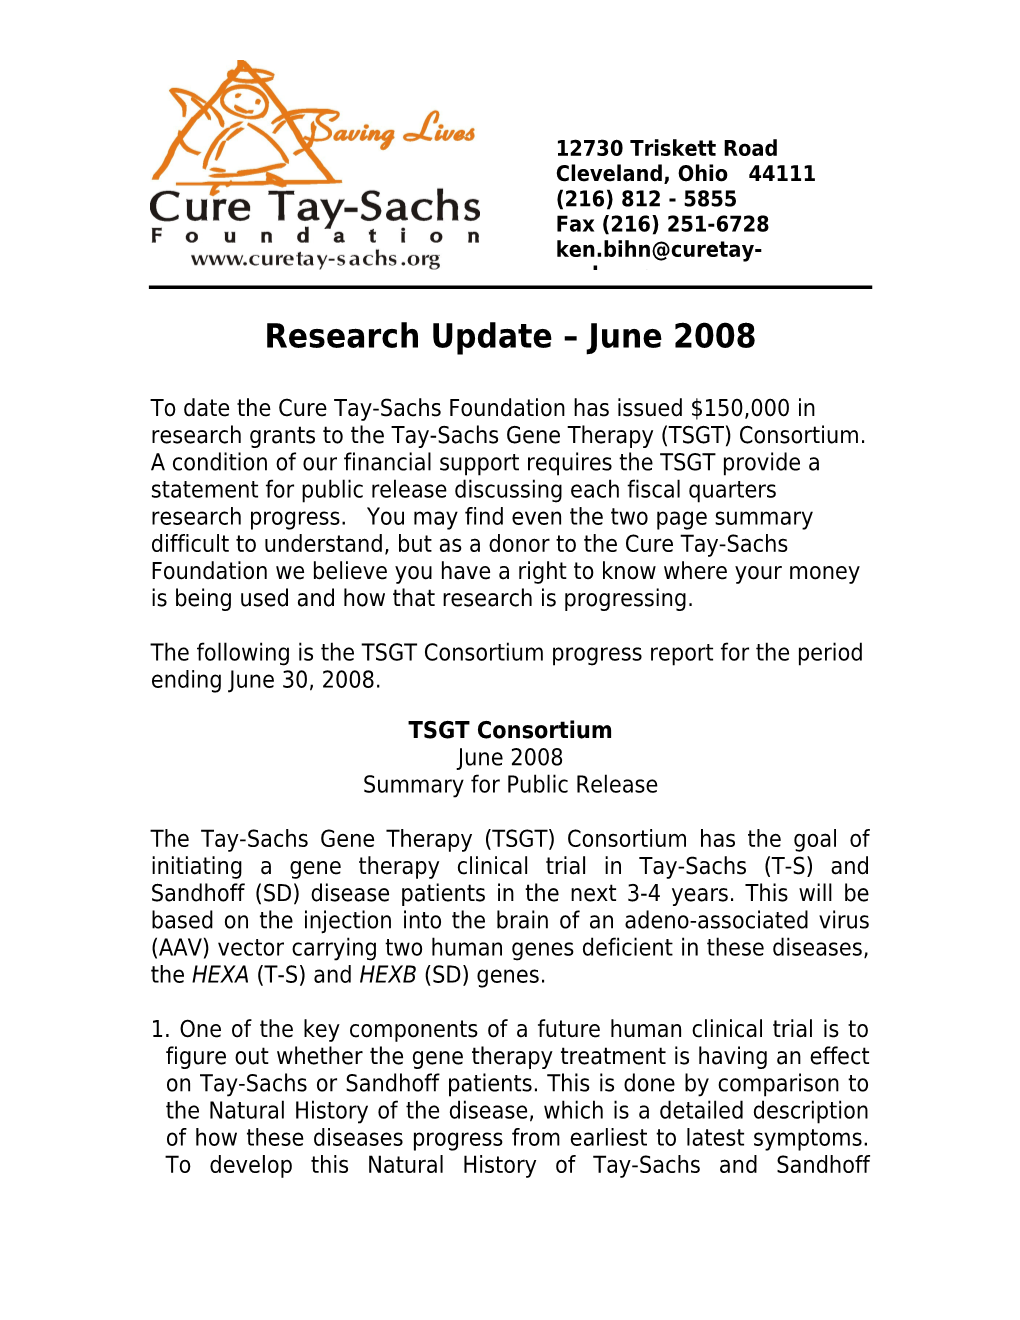 Research Update June 2008